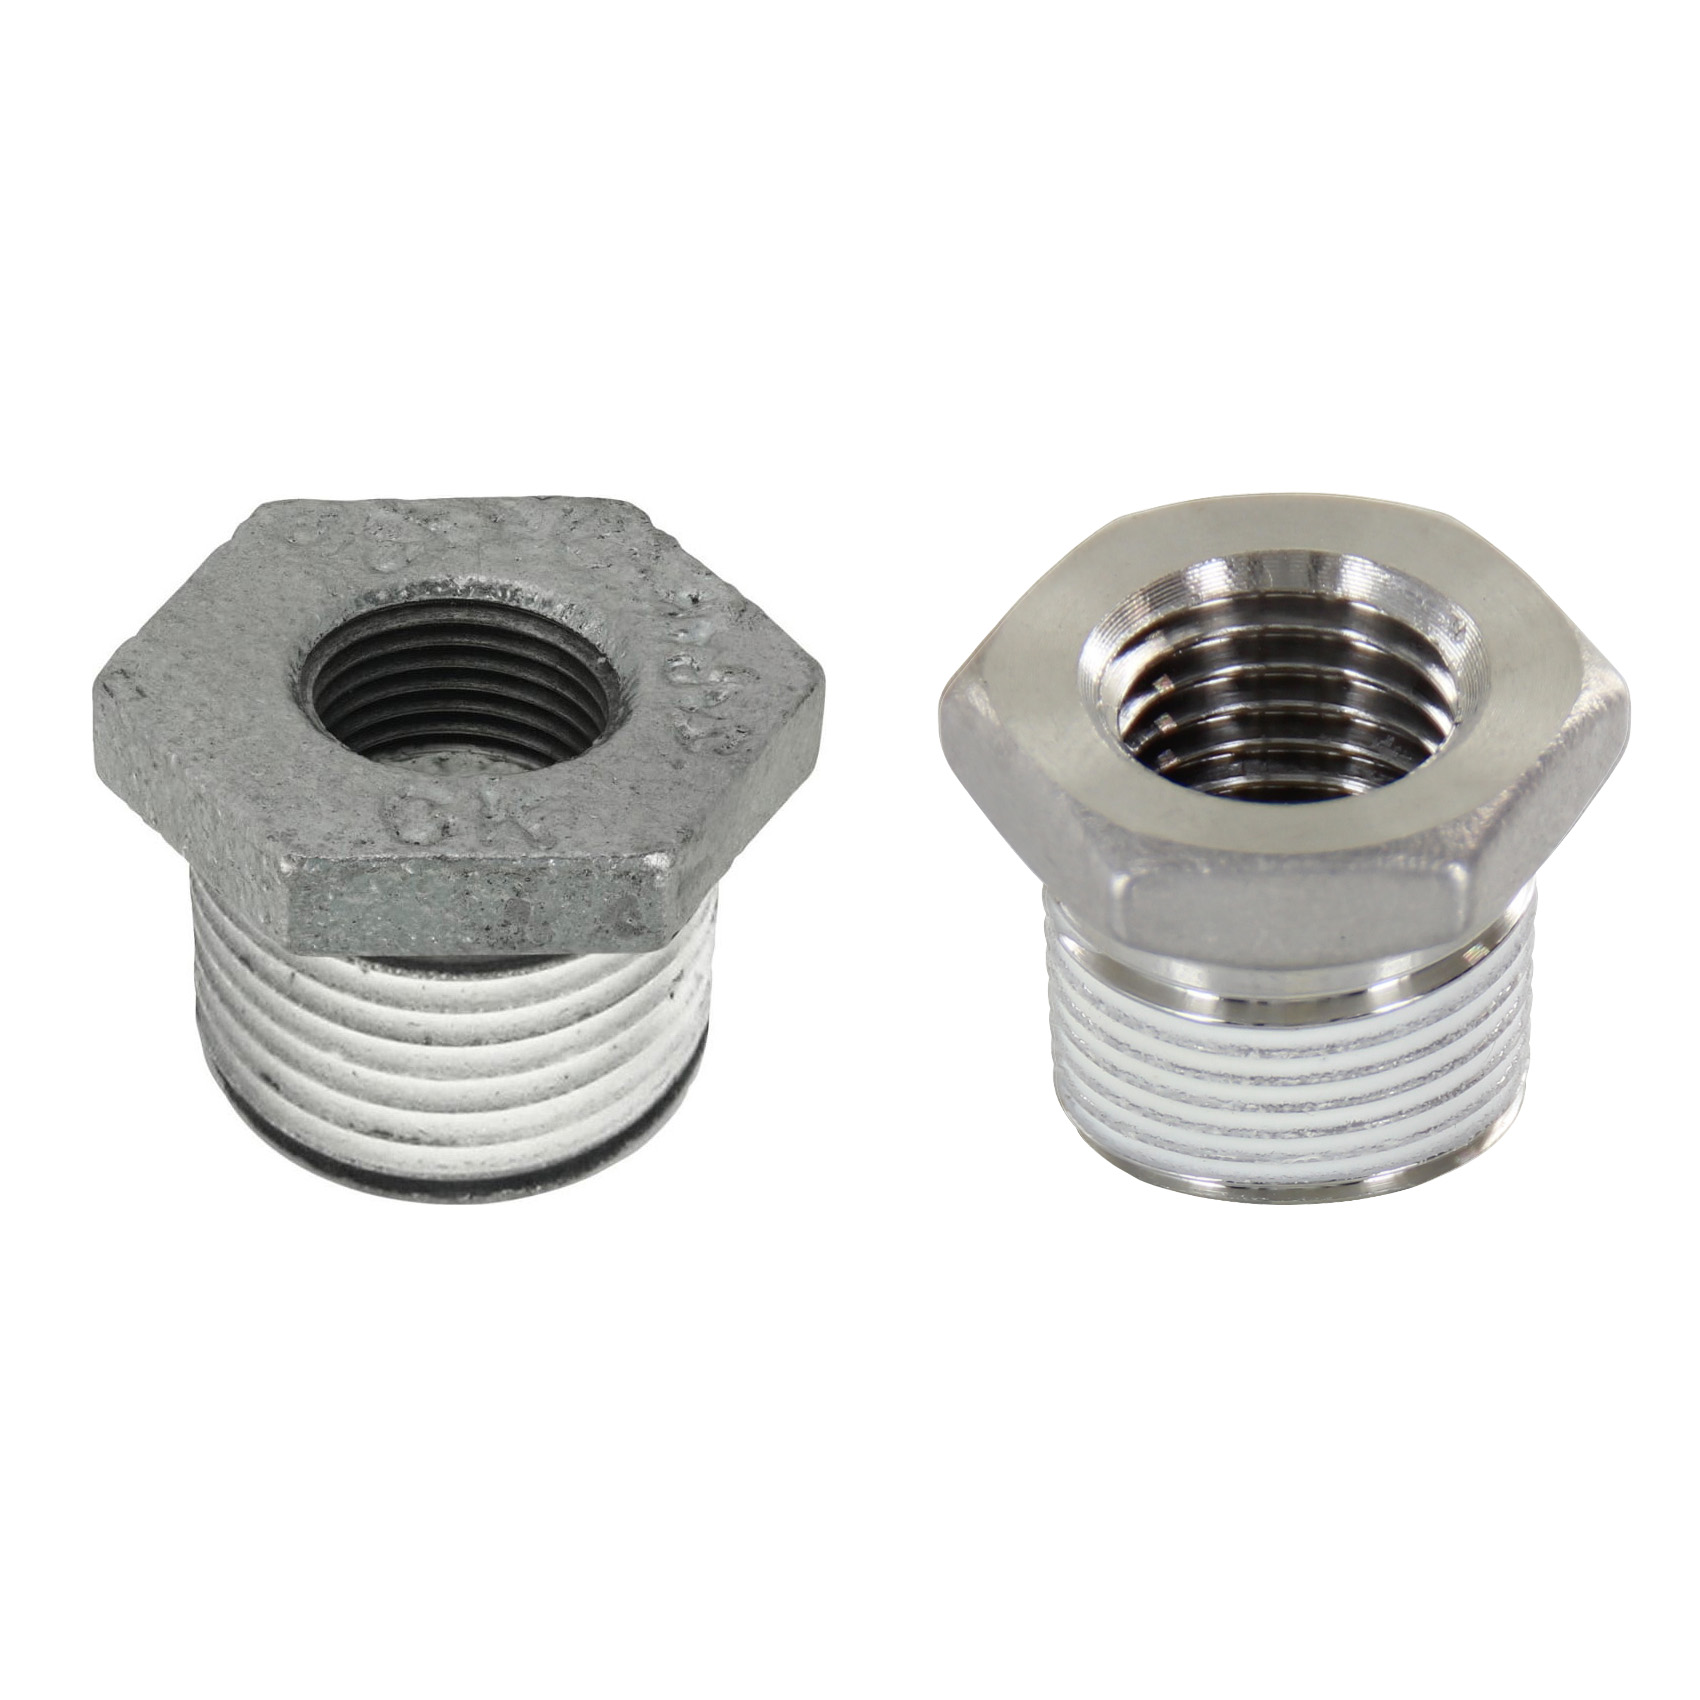 Low Pressure Screw Fittings - Thread Coated Type - Steel Pipe Fittings - Bushings (SGCPB13) 